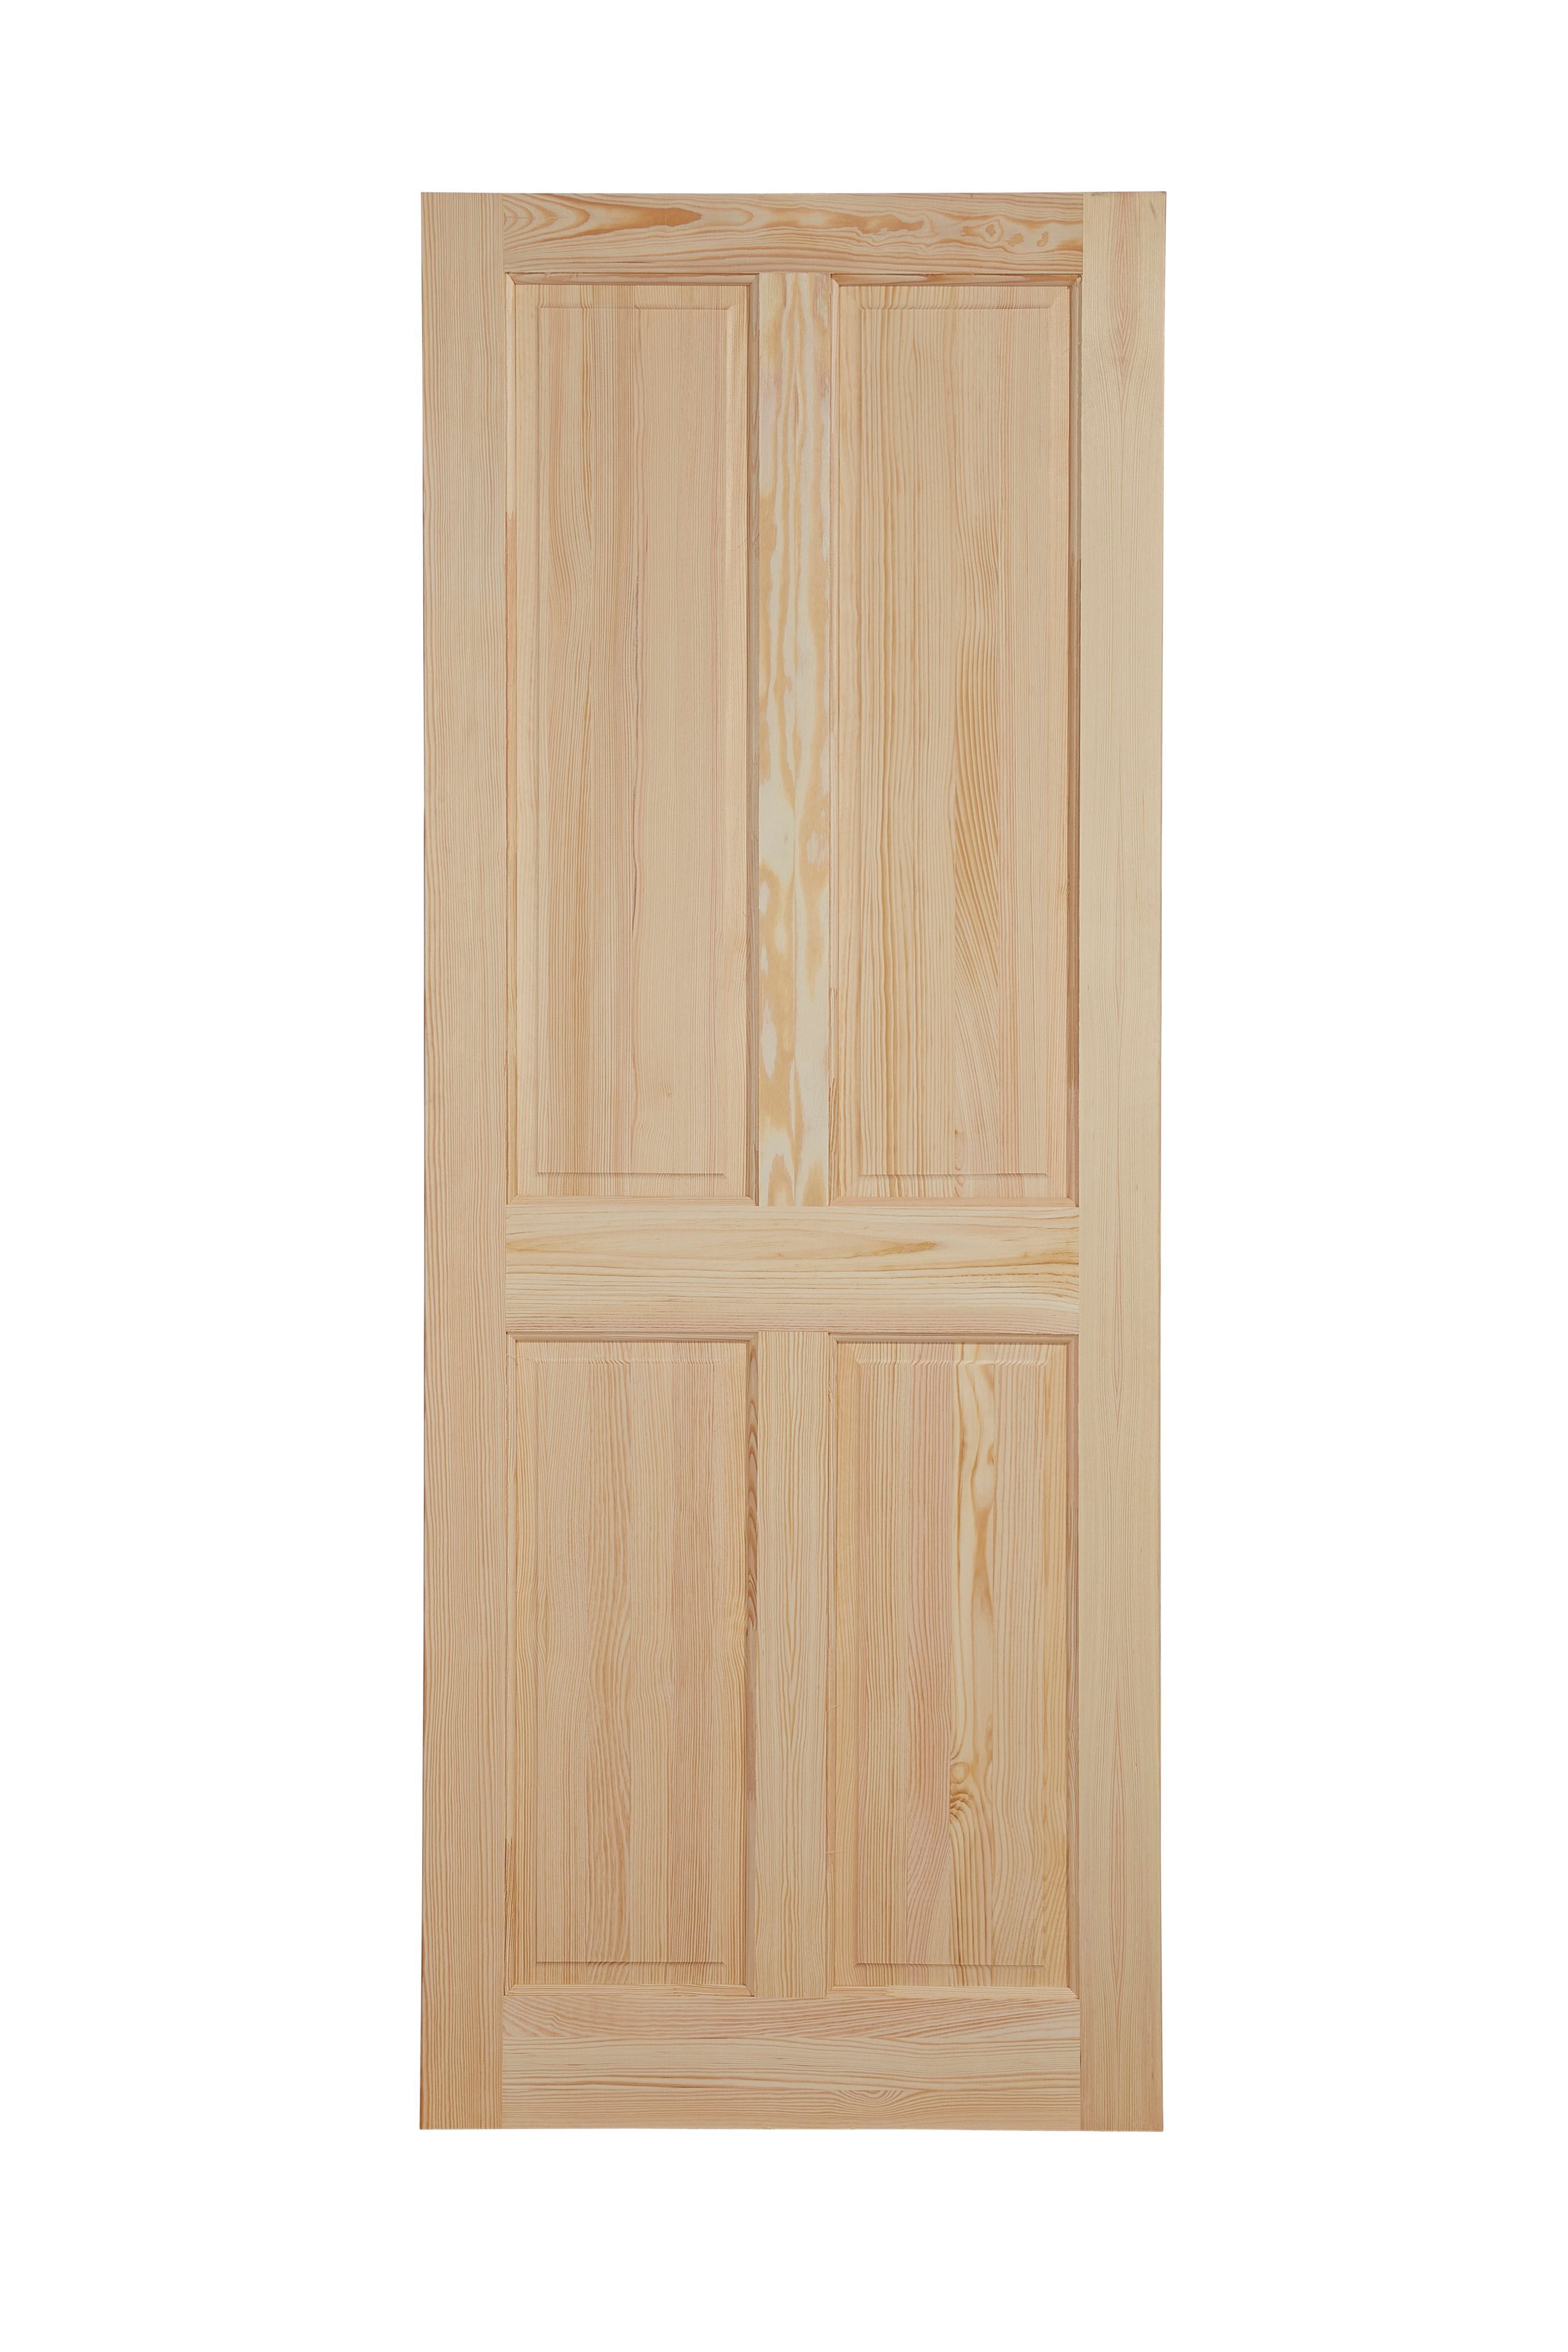 4 panel Unglazed Victorian Pine veneer Internal Clear pine Door, (H)1981mm (W)686mm (T)35mm